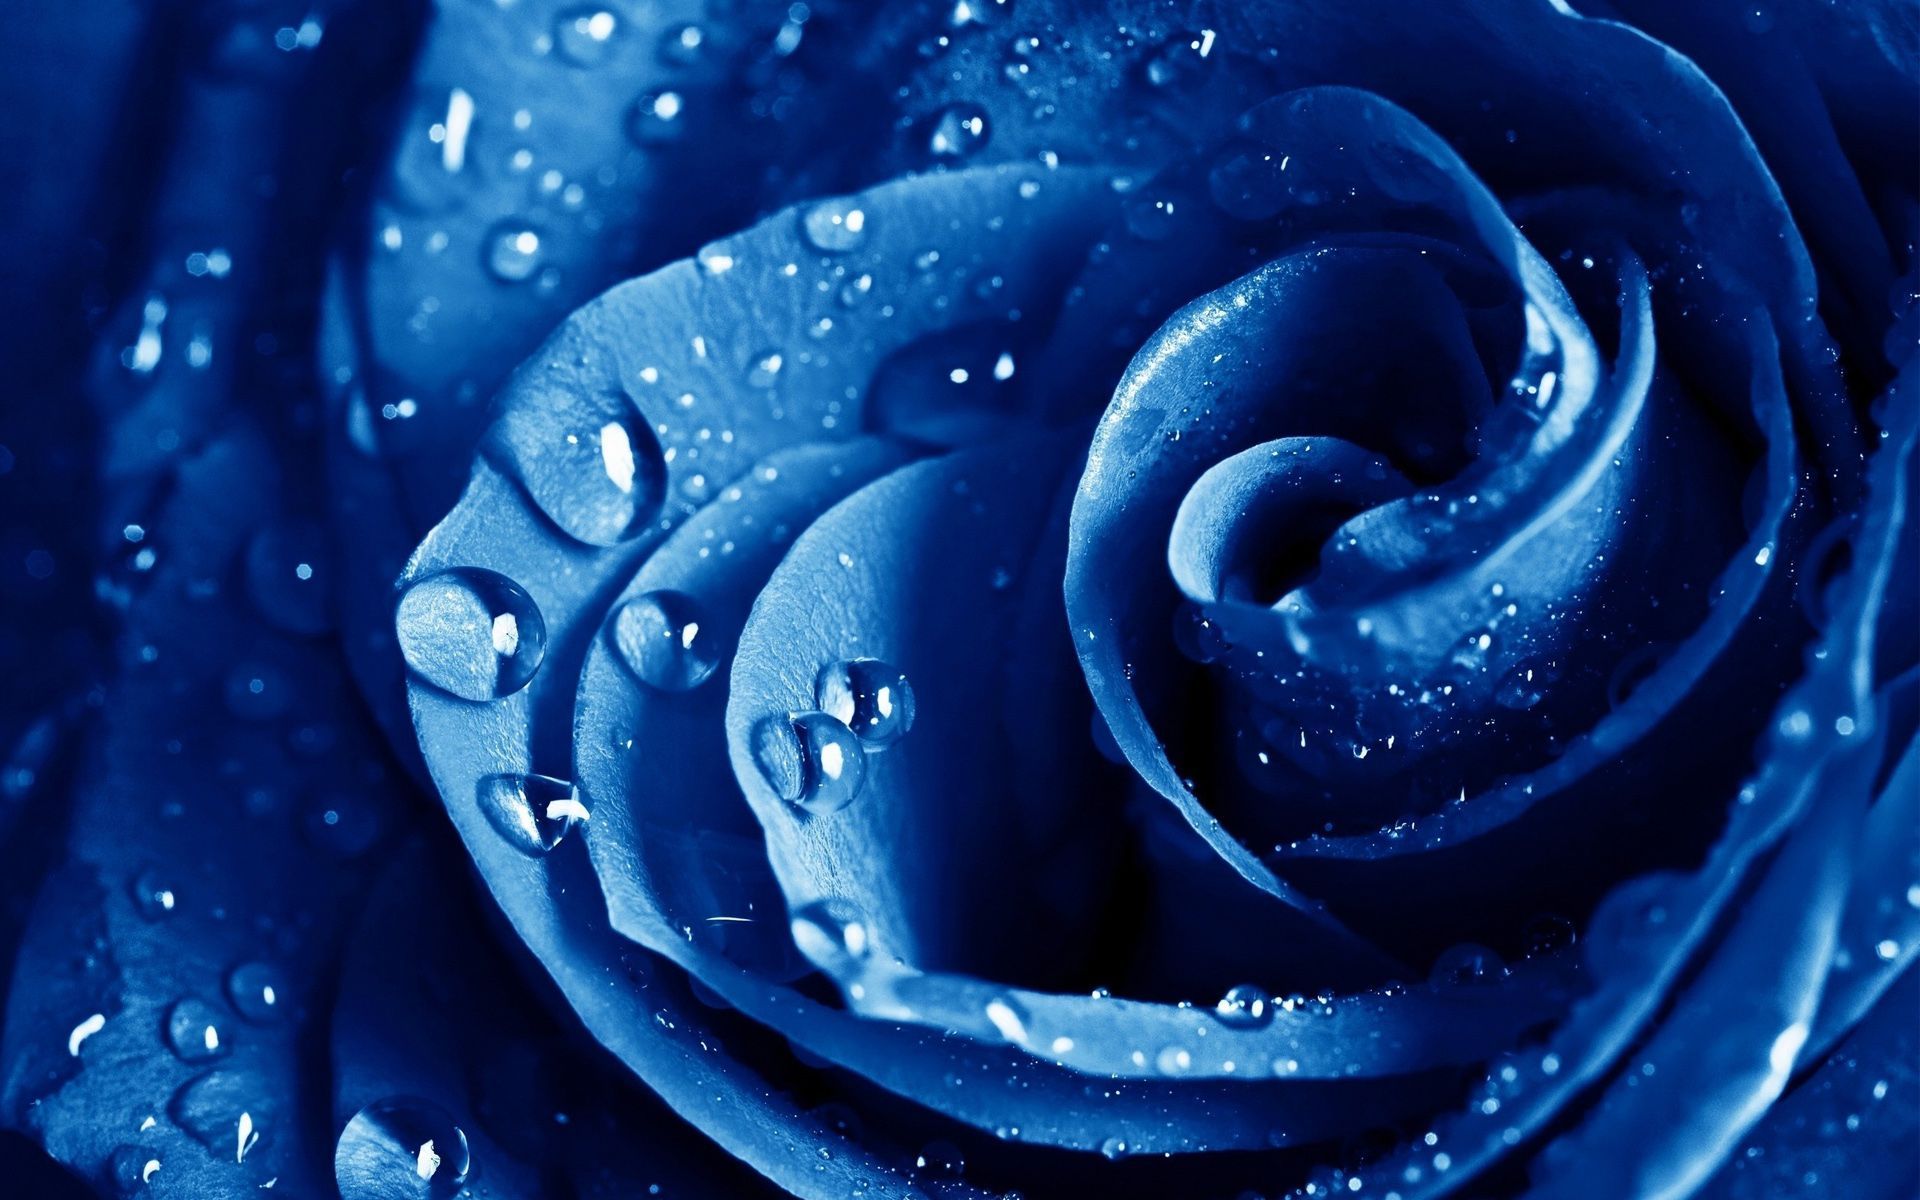 Cute butterfly nice HD wide wallpaper. Wet Drops Blue Rose